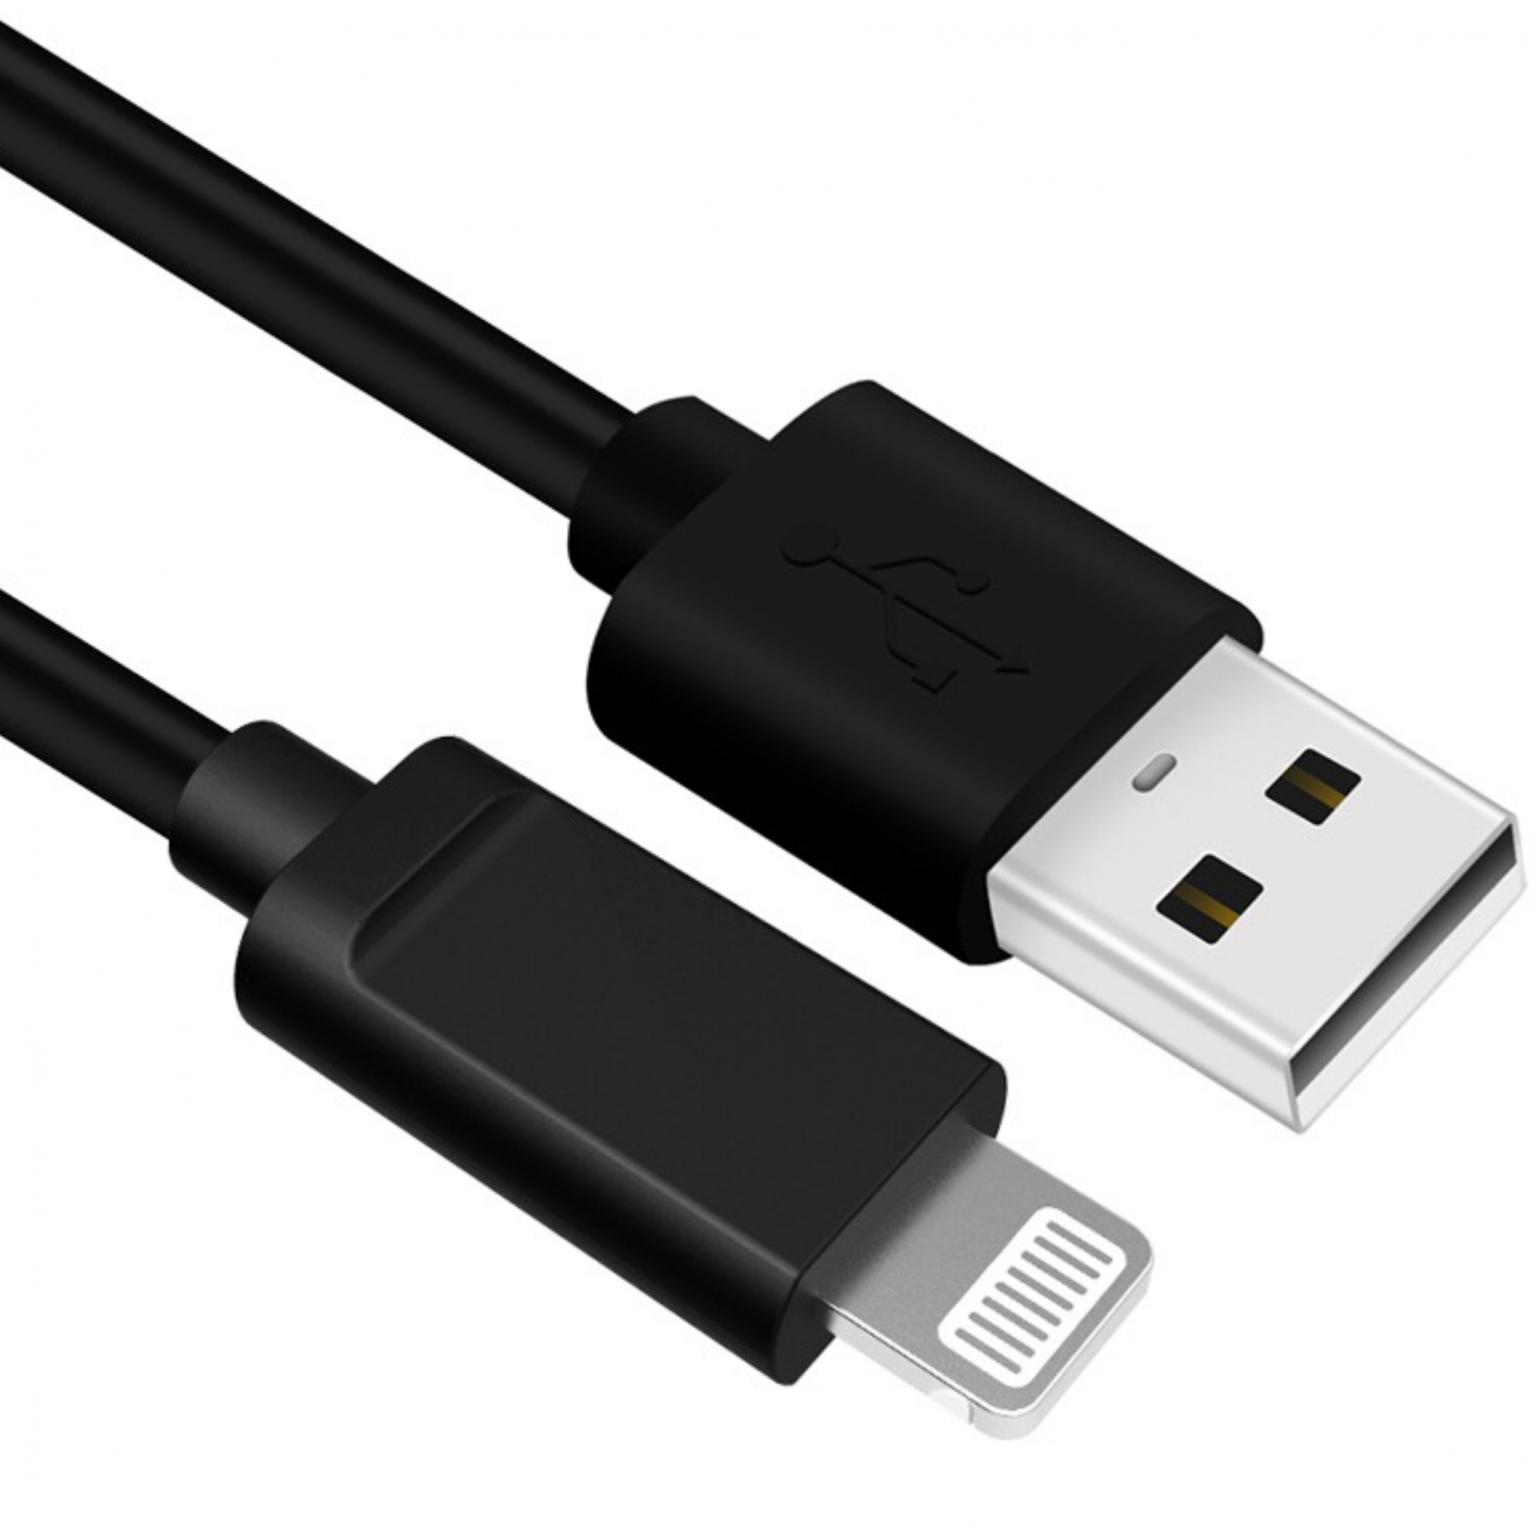 USB iPhone Kabel - Ligntning - gecertificeerd door apple